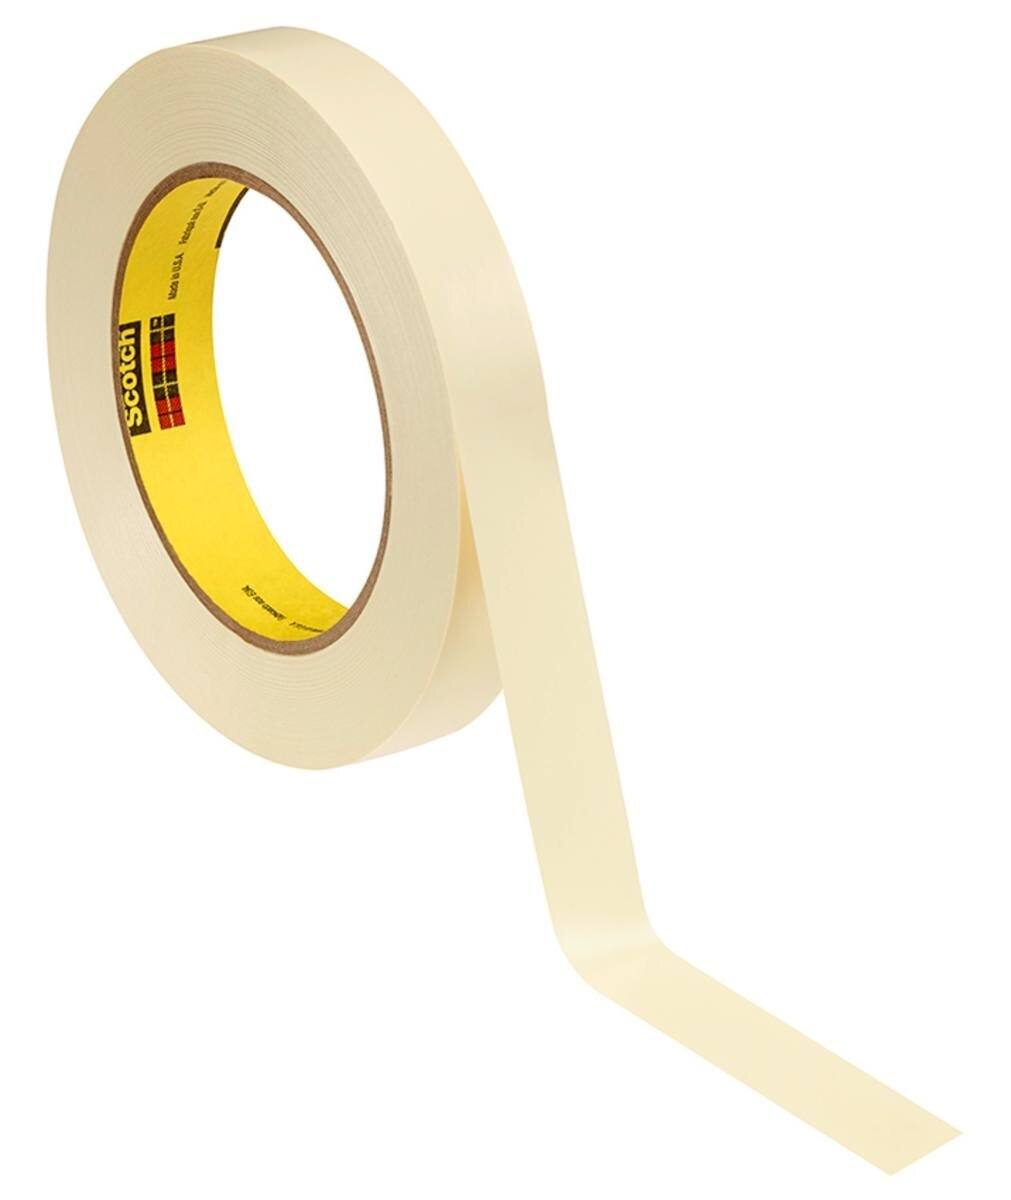 3M Galvanointiteippi pehmeä PVC 470, keltainen, 6 mm x 33 m, 0,18 mm, 0,18 mm